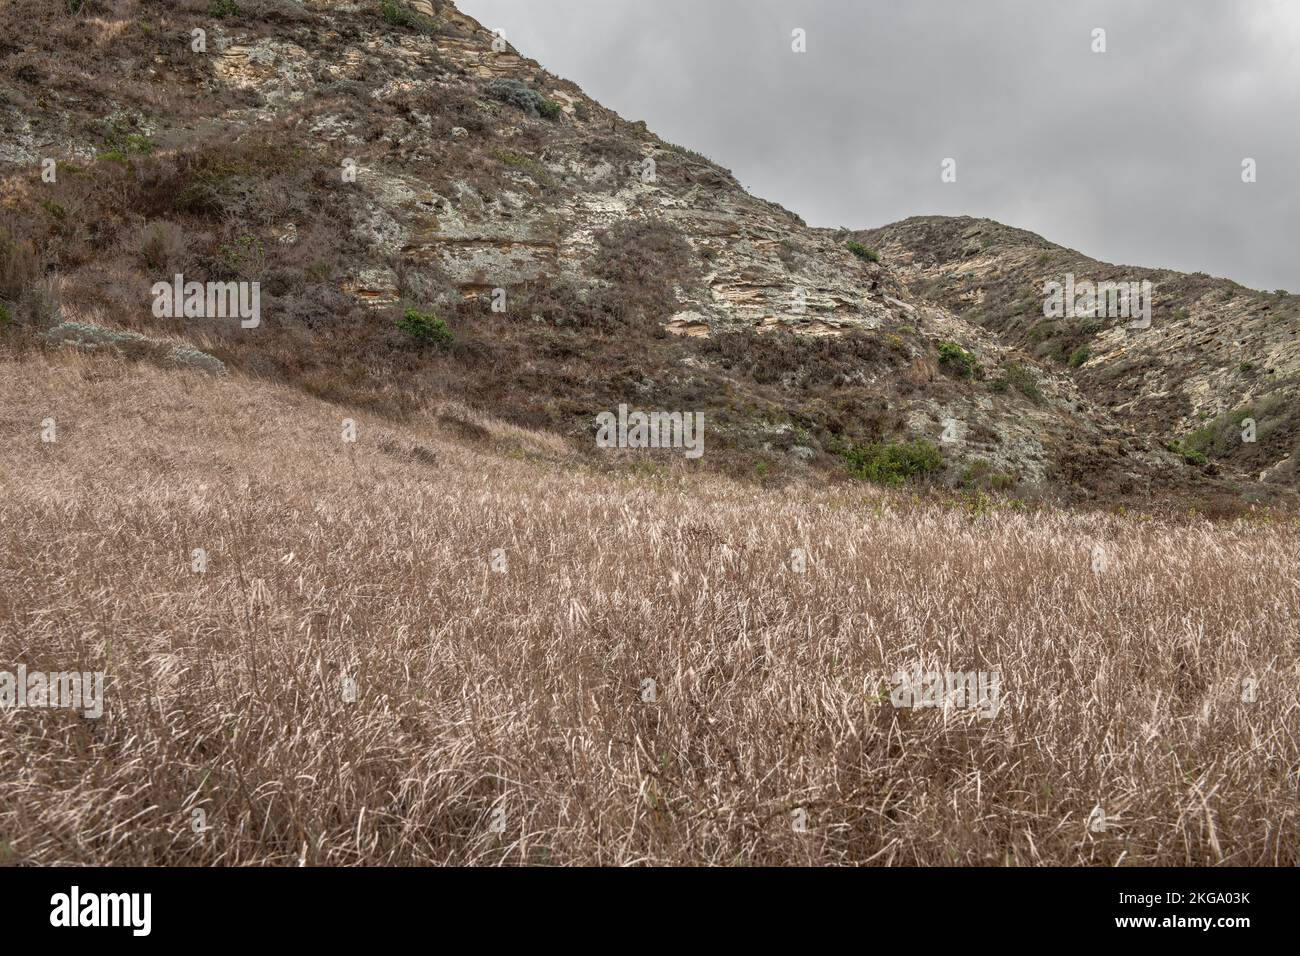 Una imagen lúgubre de una parte árida de la isla de Santa Rosa frente a la costa de California que muestra la hierba seca y el escarpado acantilado. Foto de stock